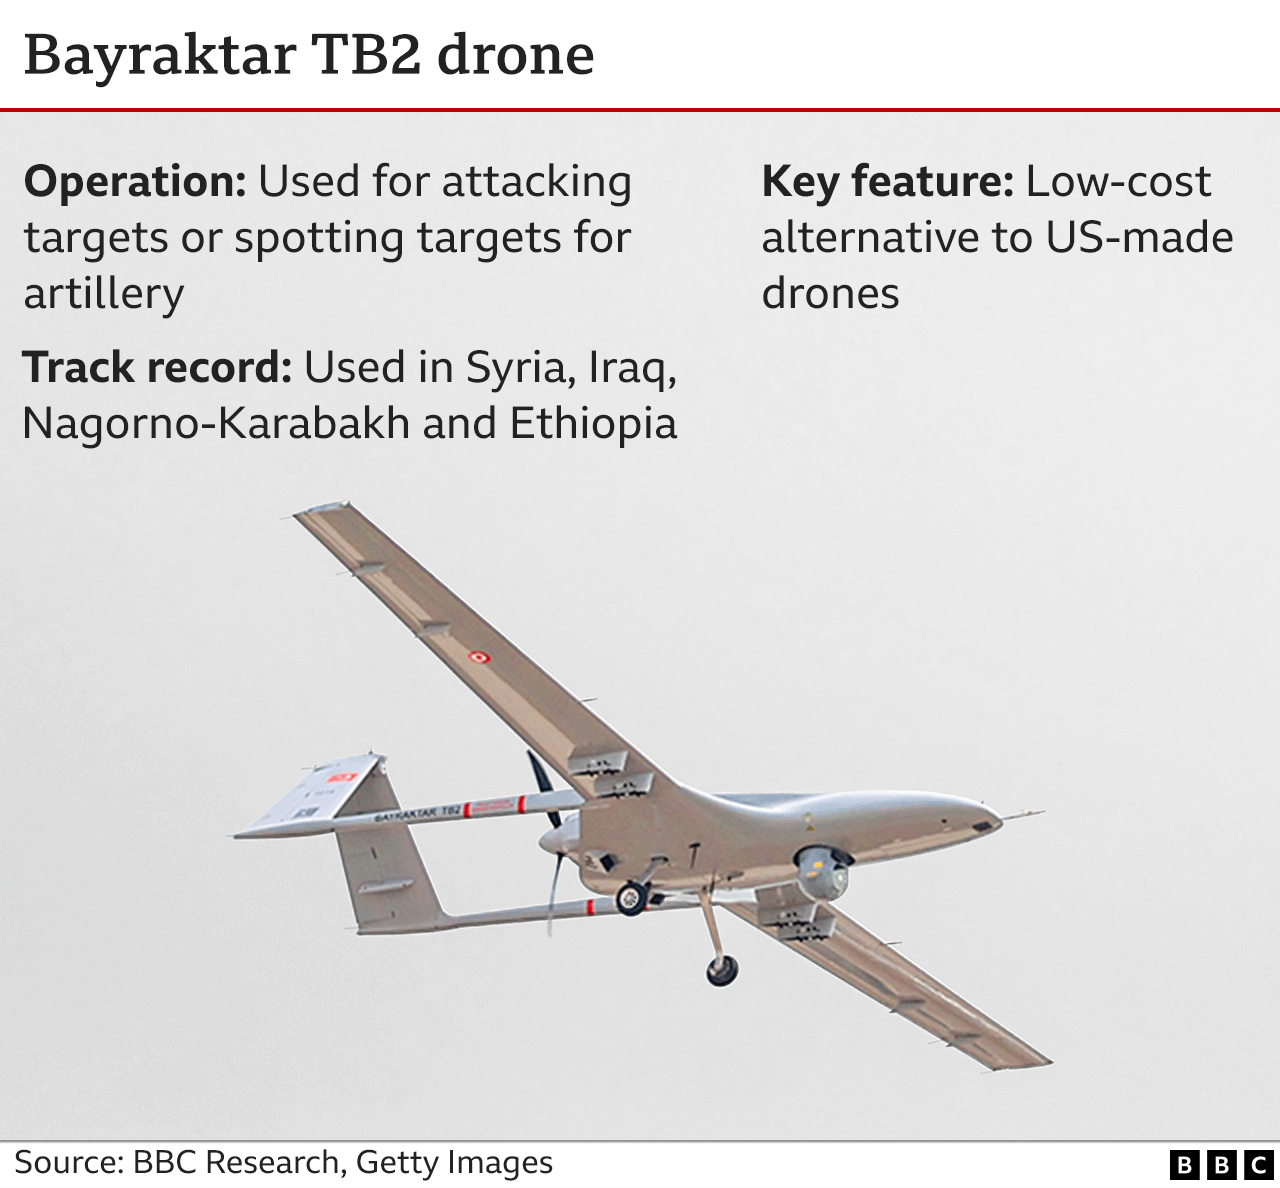 Gráfico que muestra las características del dron Bayraktar TB2. El Bayraktar TB2 es una alternativa de bajo coste a los drones de fabricación estadounidense y puede utilizarse para atacar directamente o coordinar ataques con otros sistemas sobre objetivos.